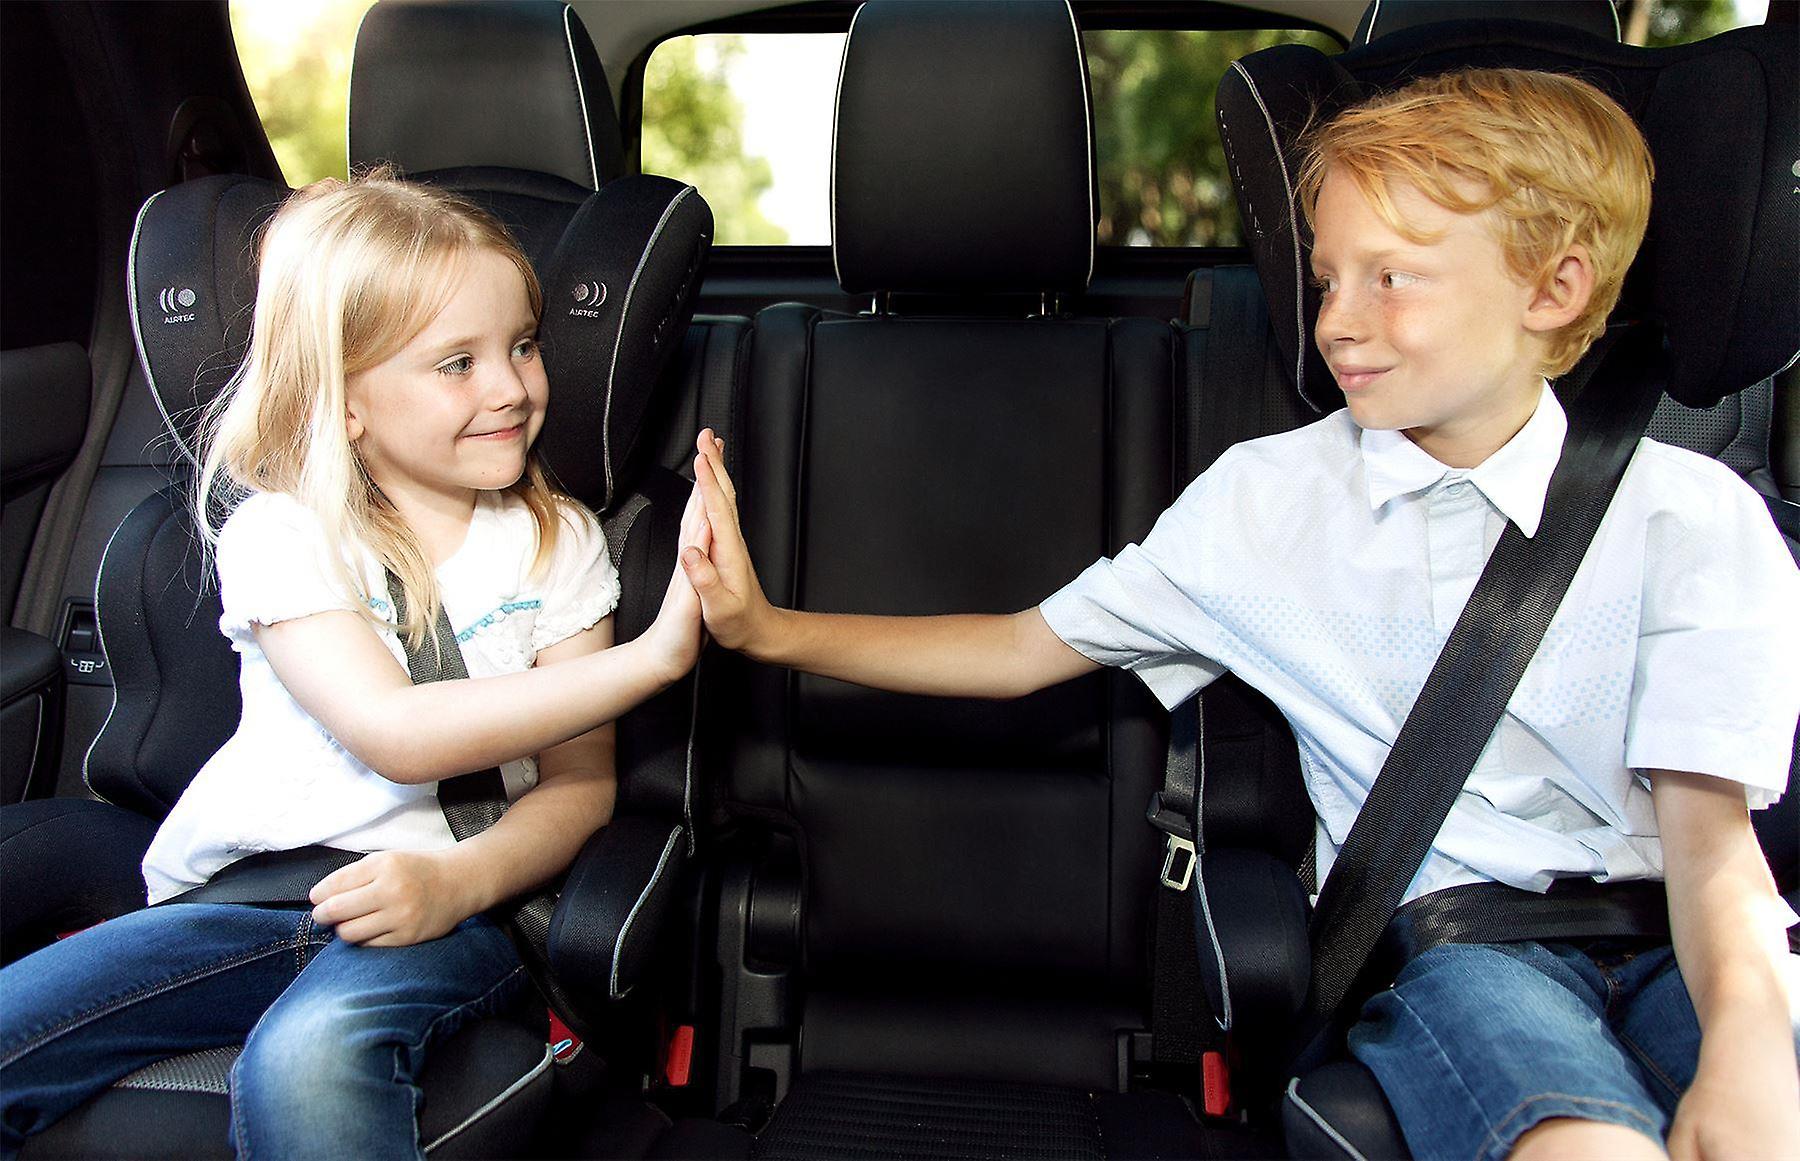 Cadeira auto para os grupos 1, 2, 3: a manter o seu filho seguro desde os  15 meses aos 12 anos